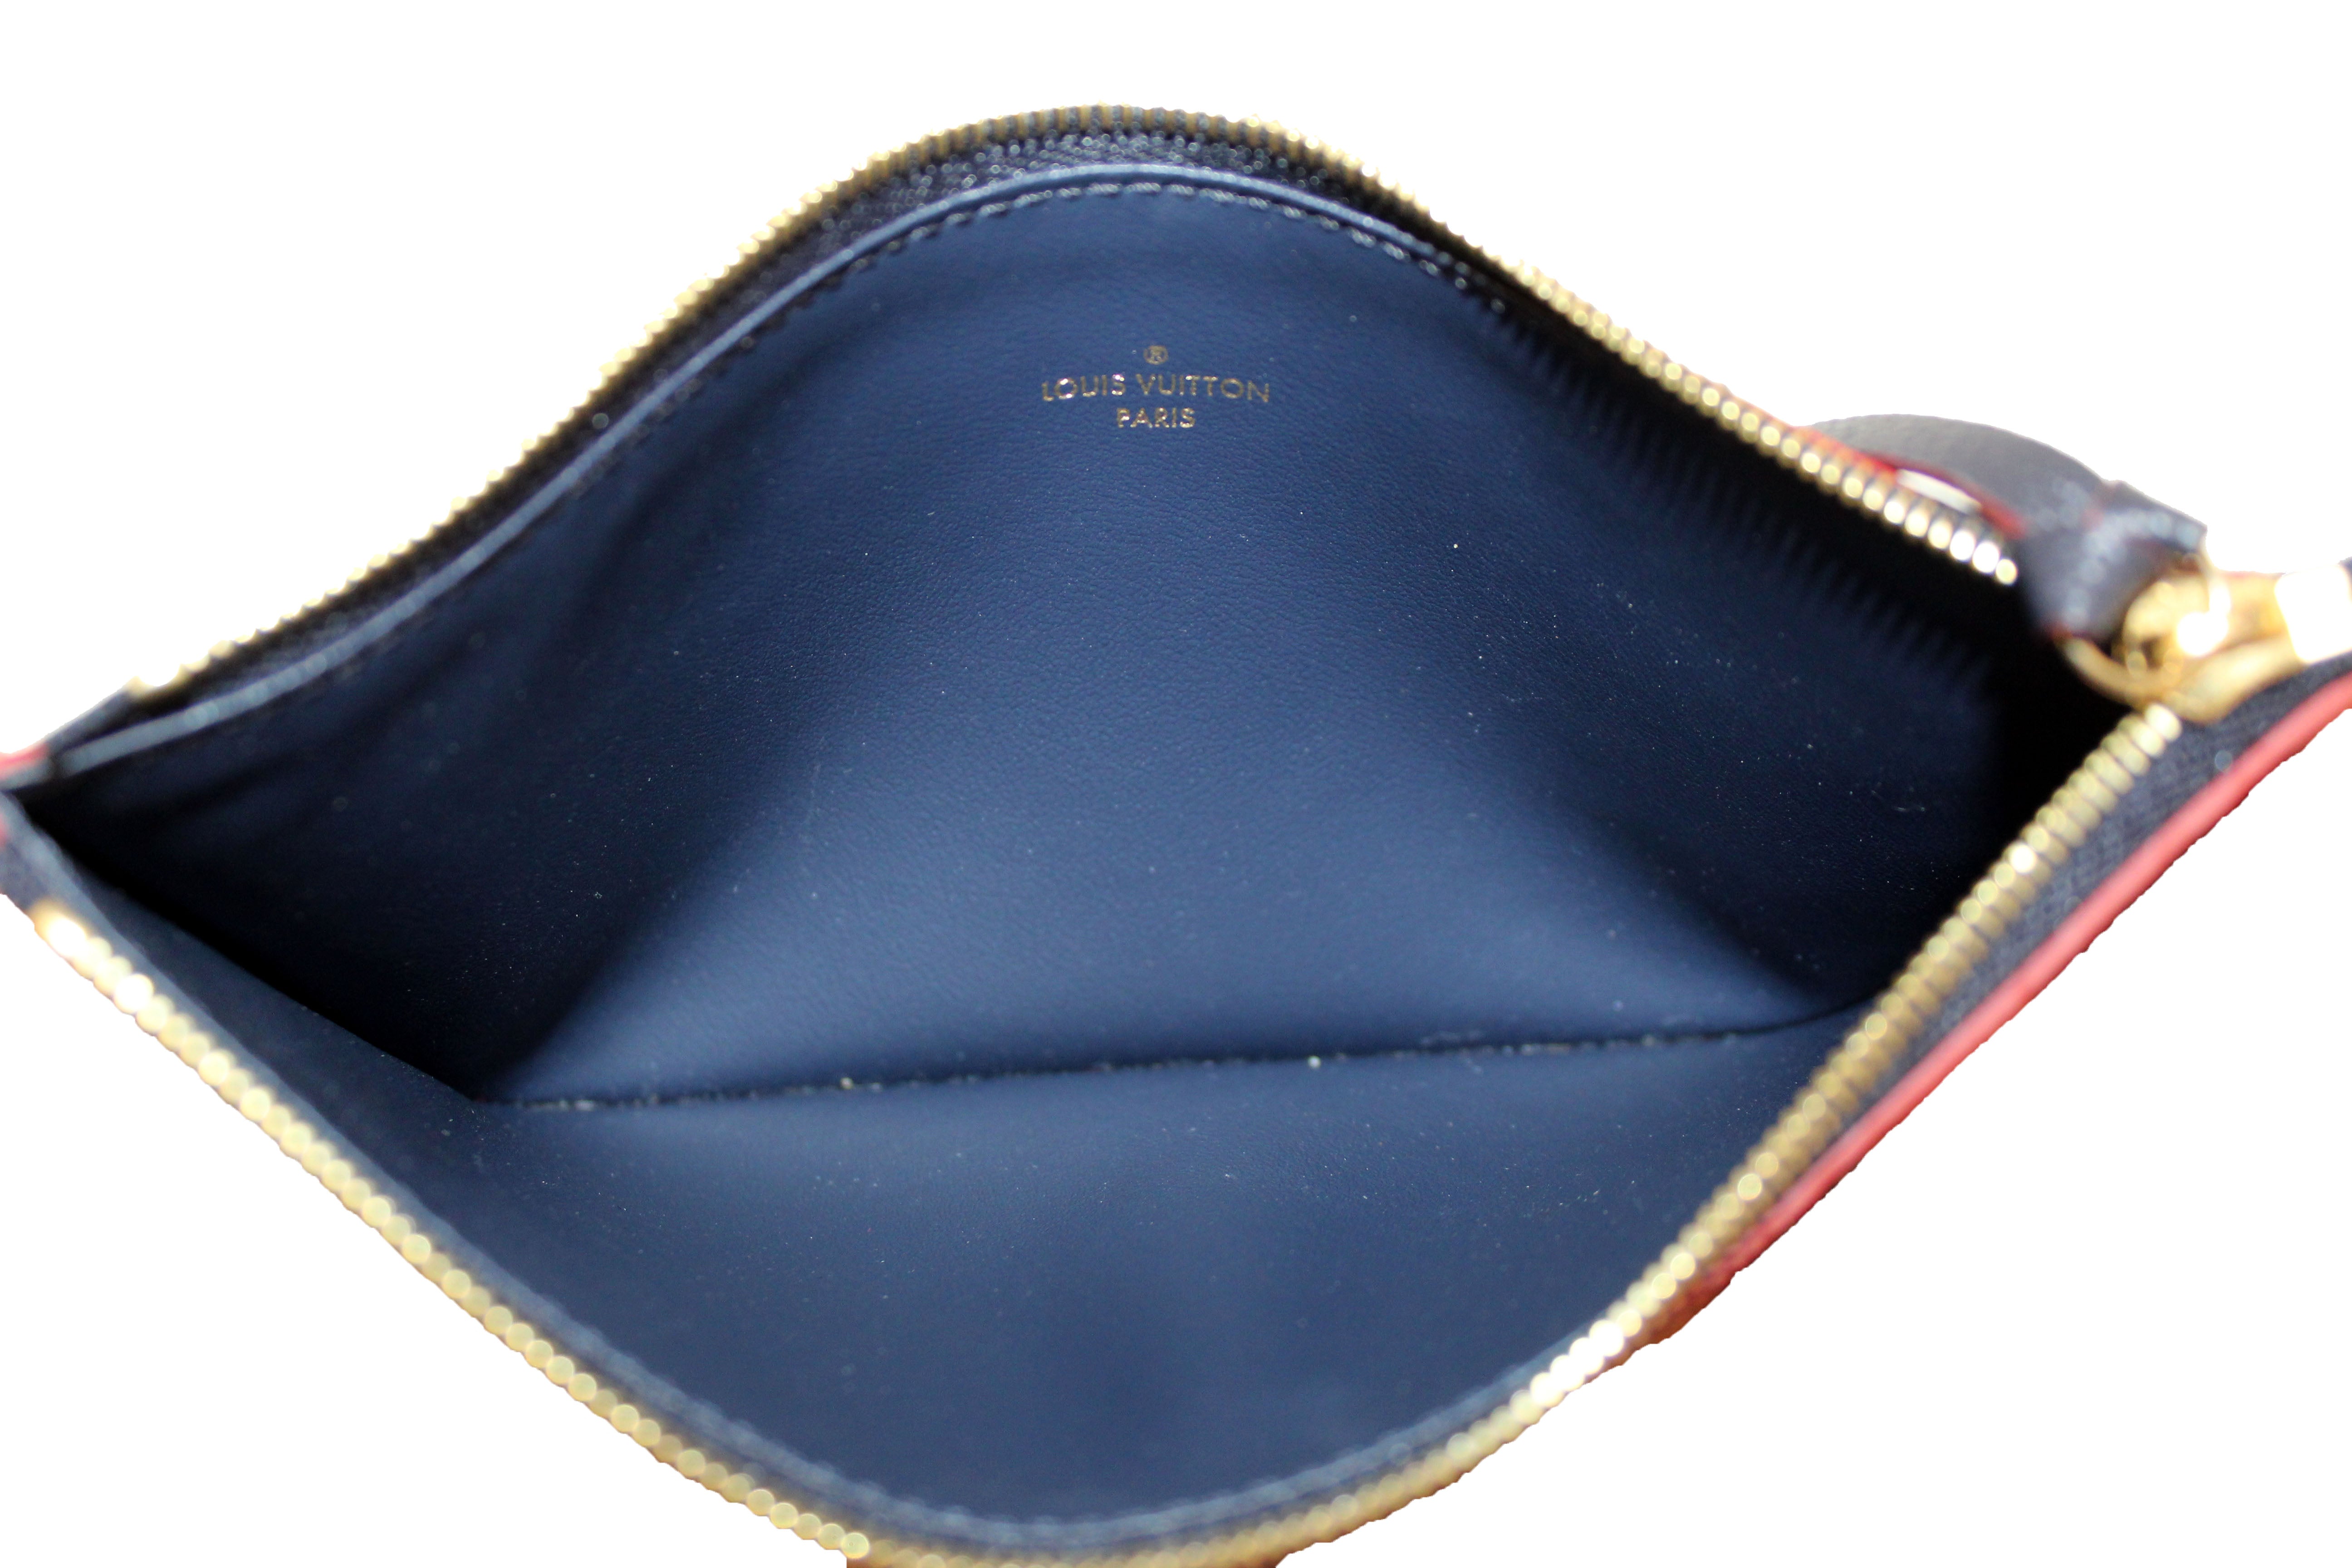 Authentic Louis Vuitton Navy Blue Monogram Empreinte Felicie Pochette Bag